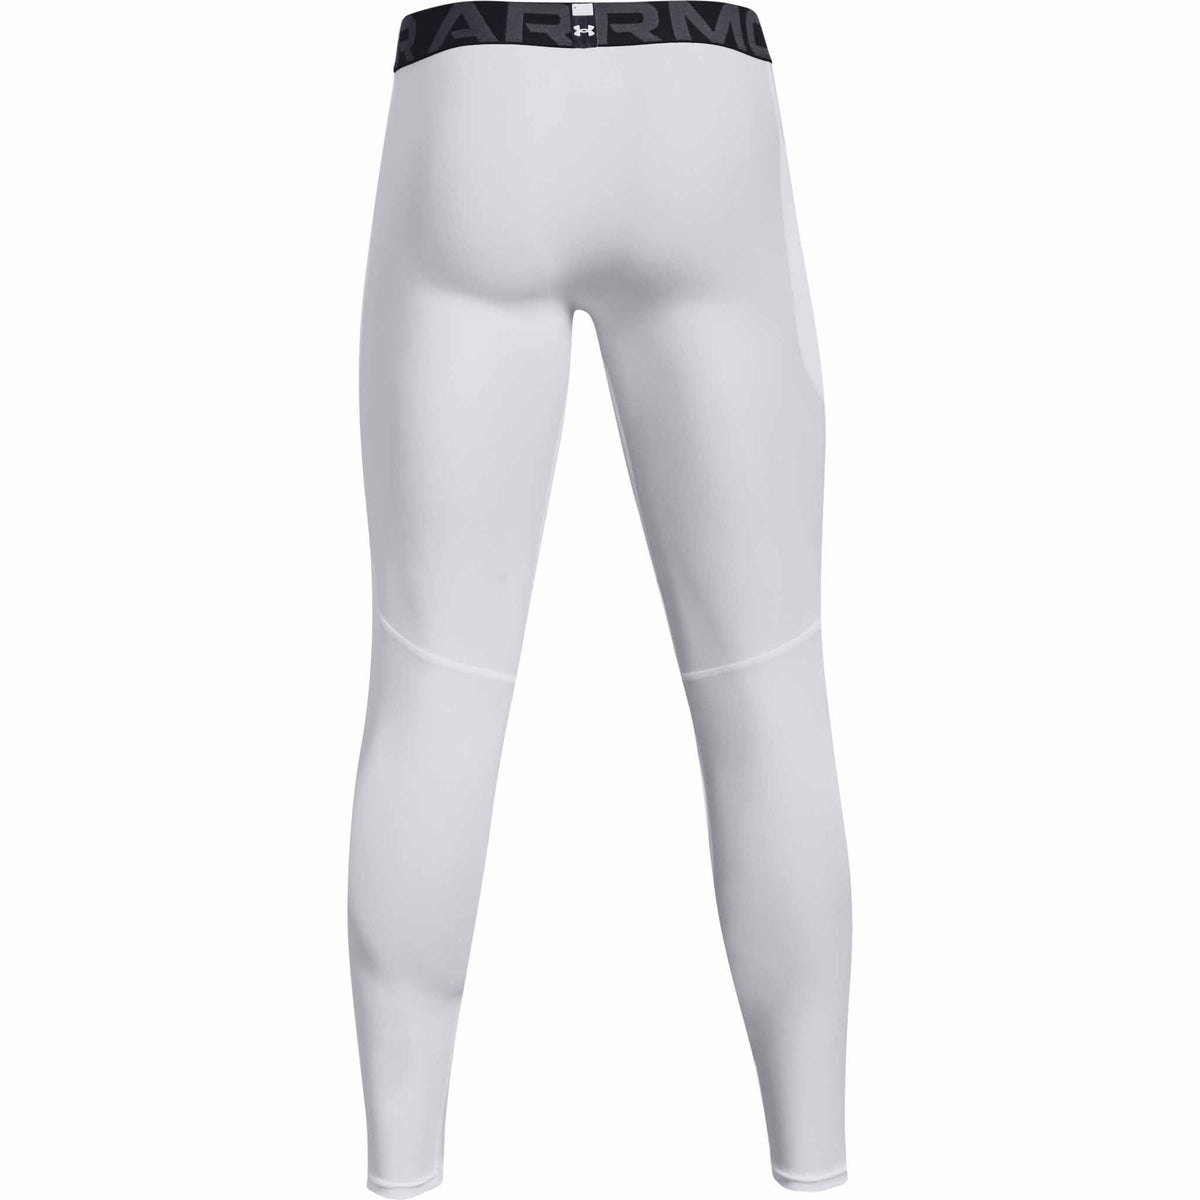 Under Armour HeatGear Armour Leggings pantalons de compression pour homme - White / Black